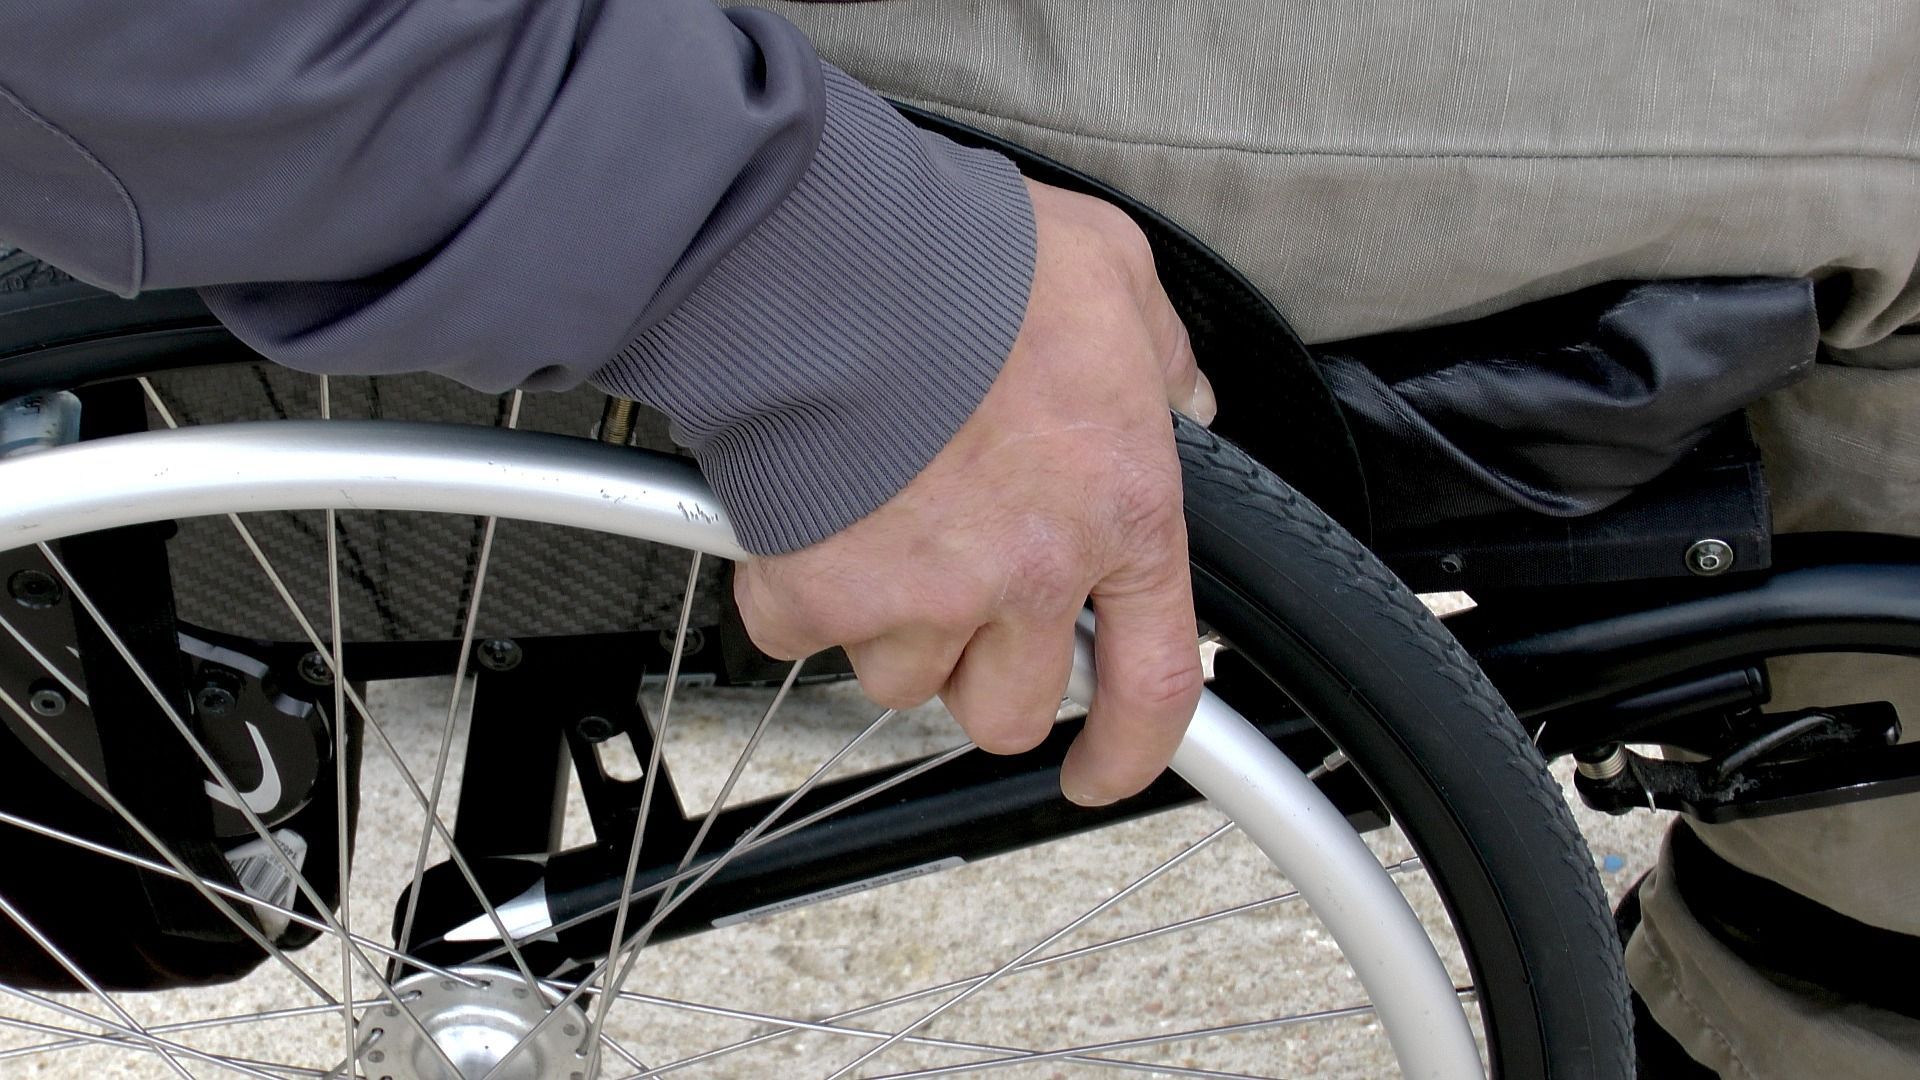 La direction générale Personnes handicapées améliore ses services, mais les délais restent encore longs